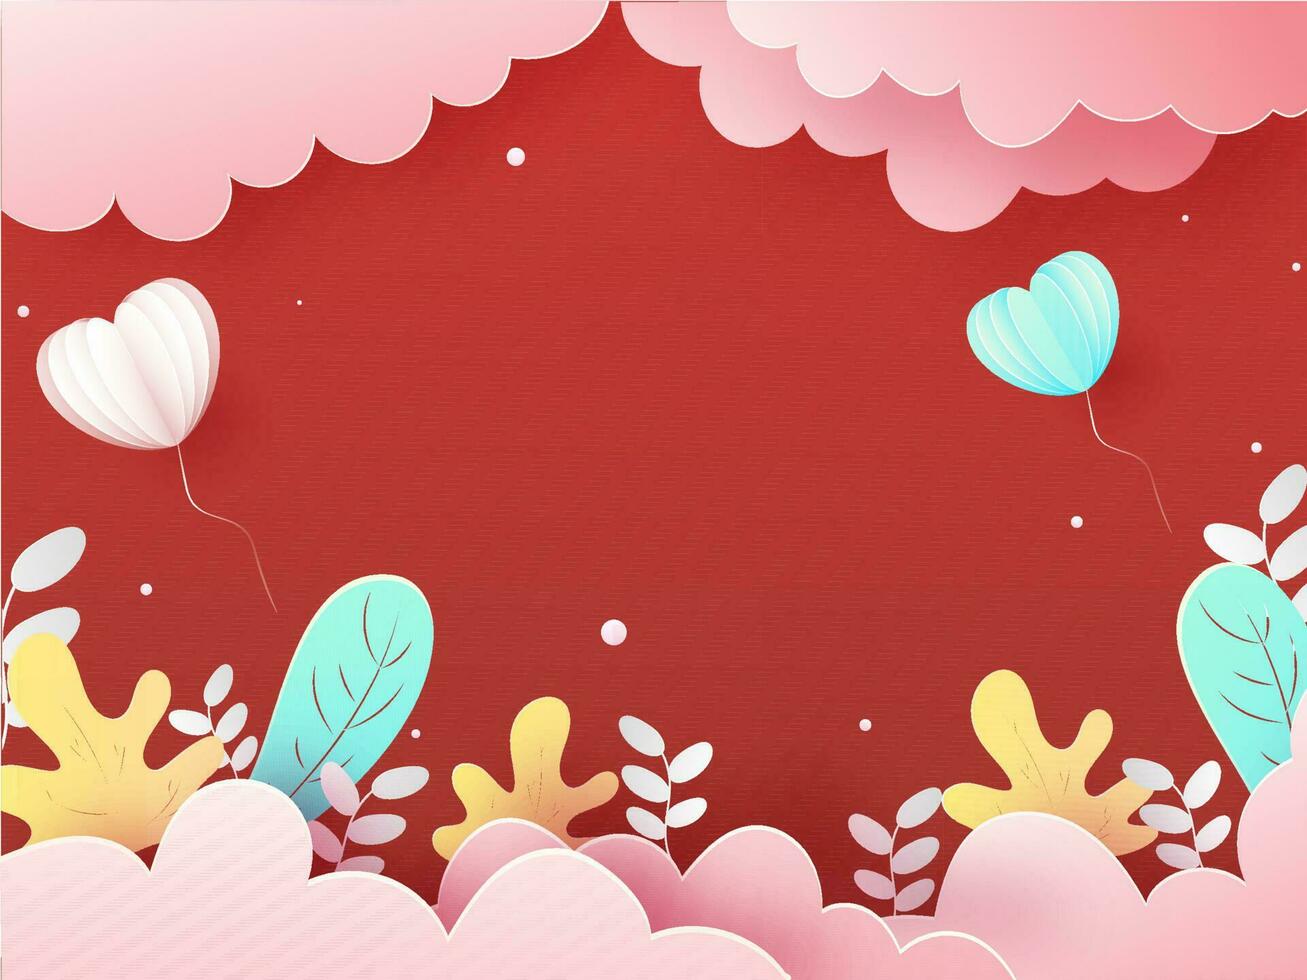 Papier Schnitt Stil wolkig rot Hintergrund mit Herz geformt Luftballons und Herbst Blätter. vektor